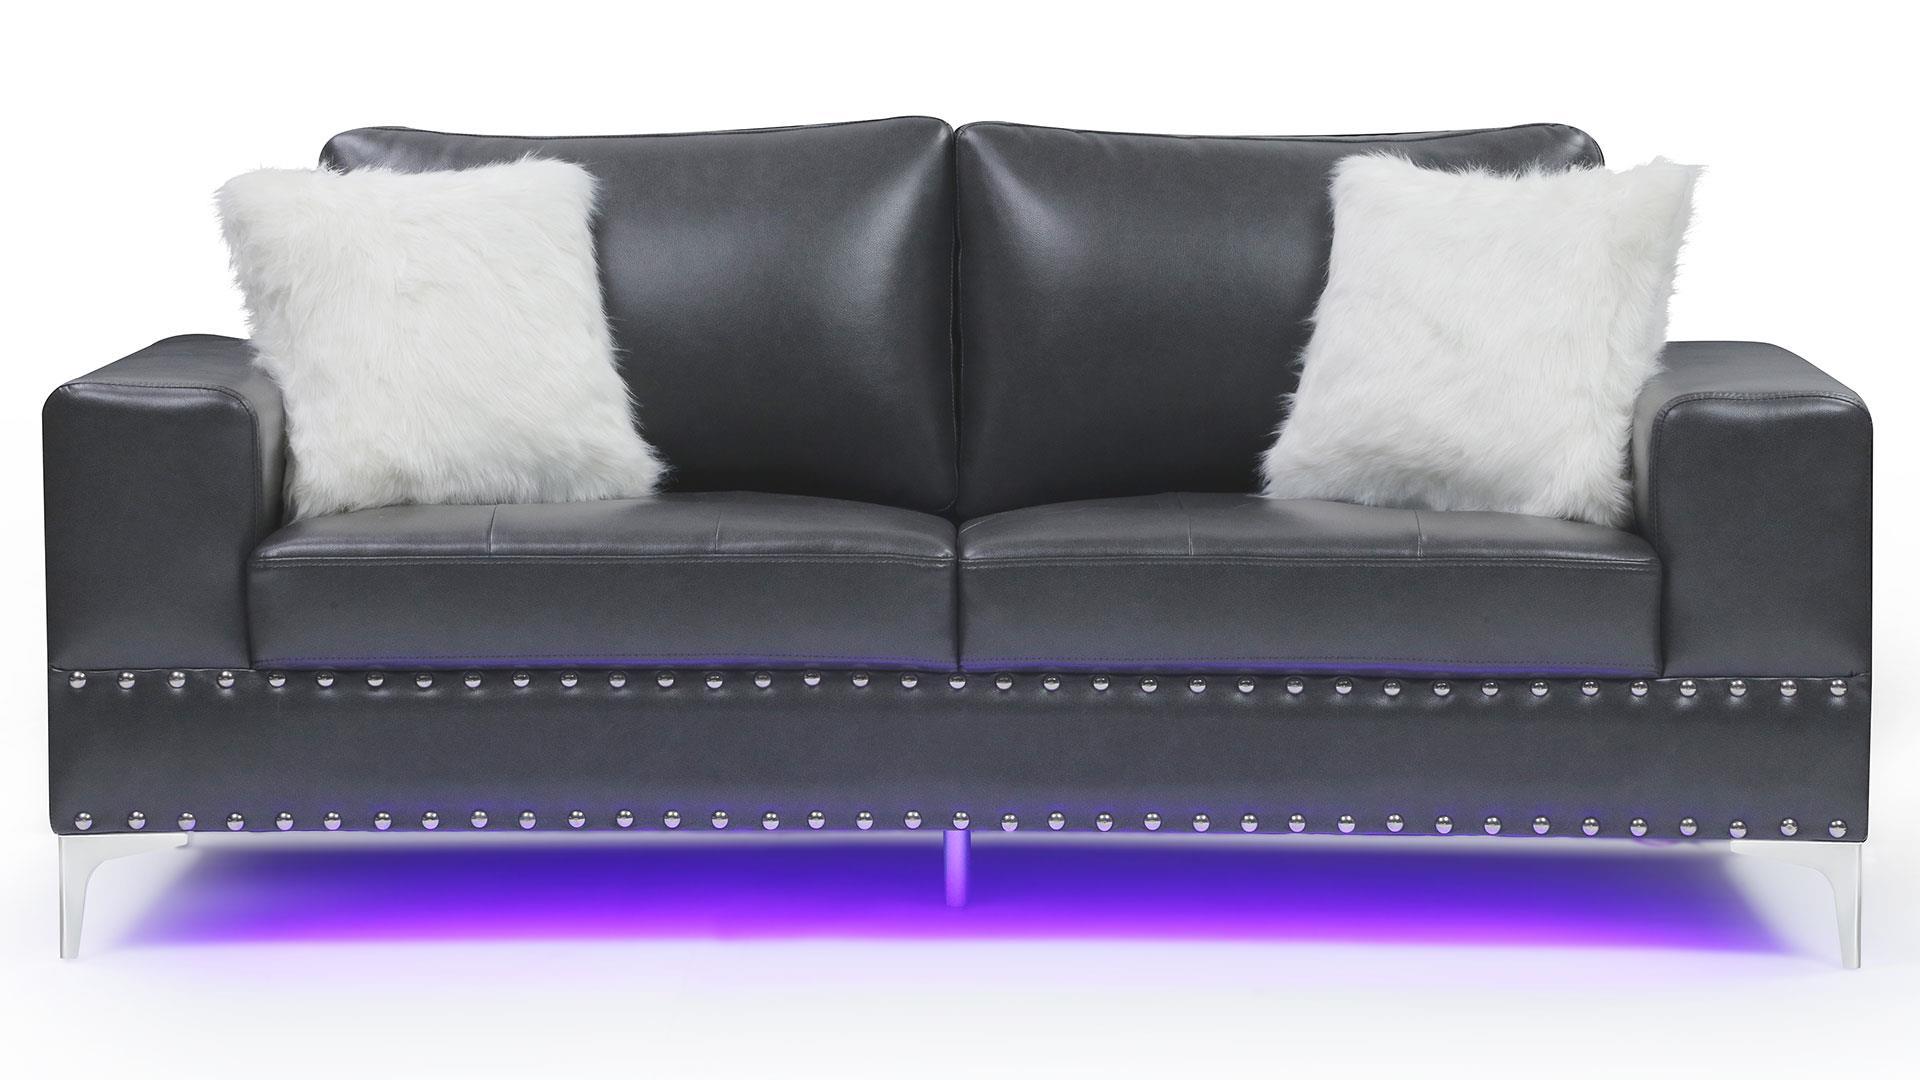 

    
U98 Glam Design Charcoal Leather Gel Sofa Set 3Pcs w/ LED Global USA
